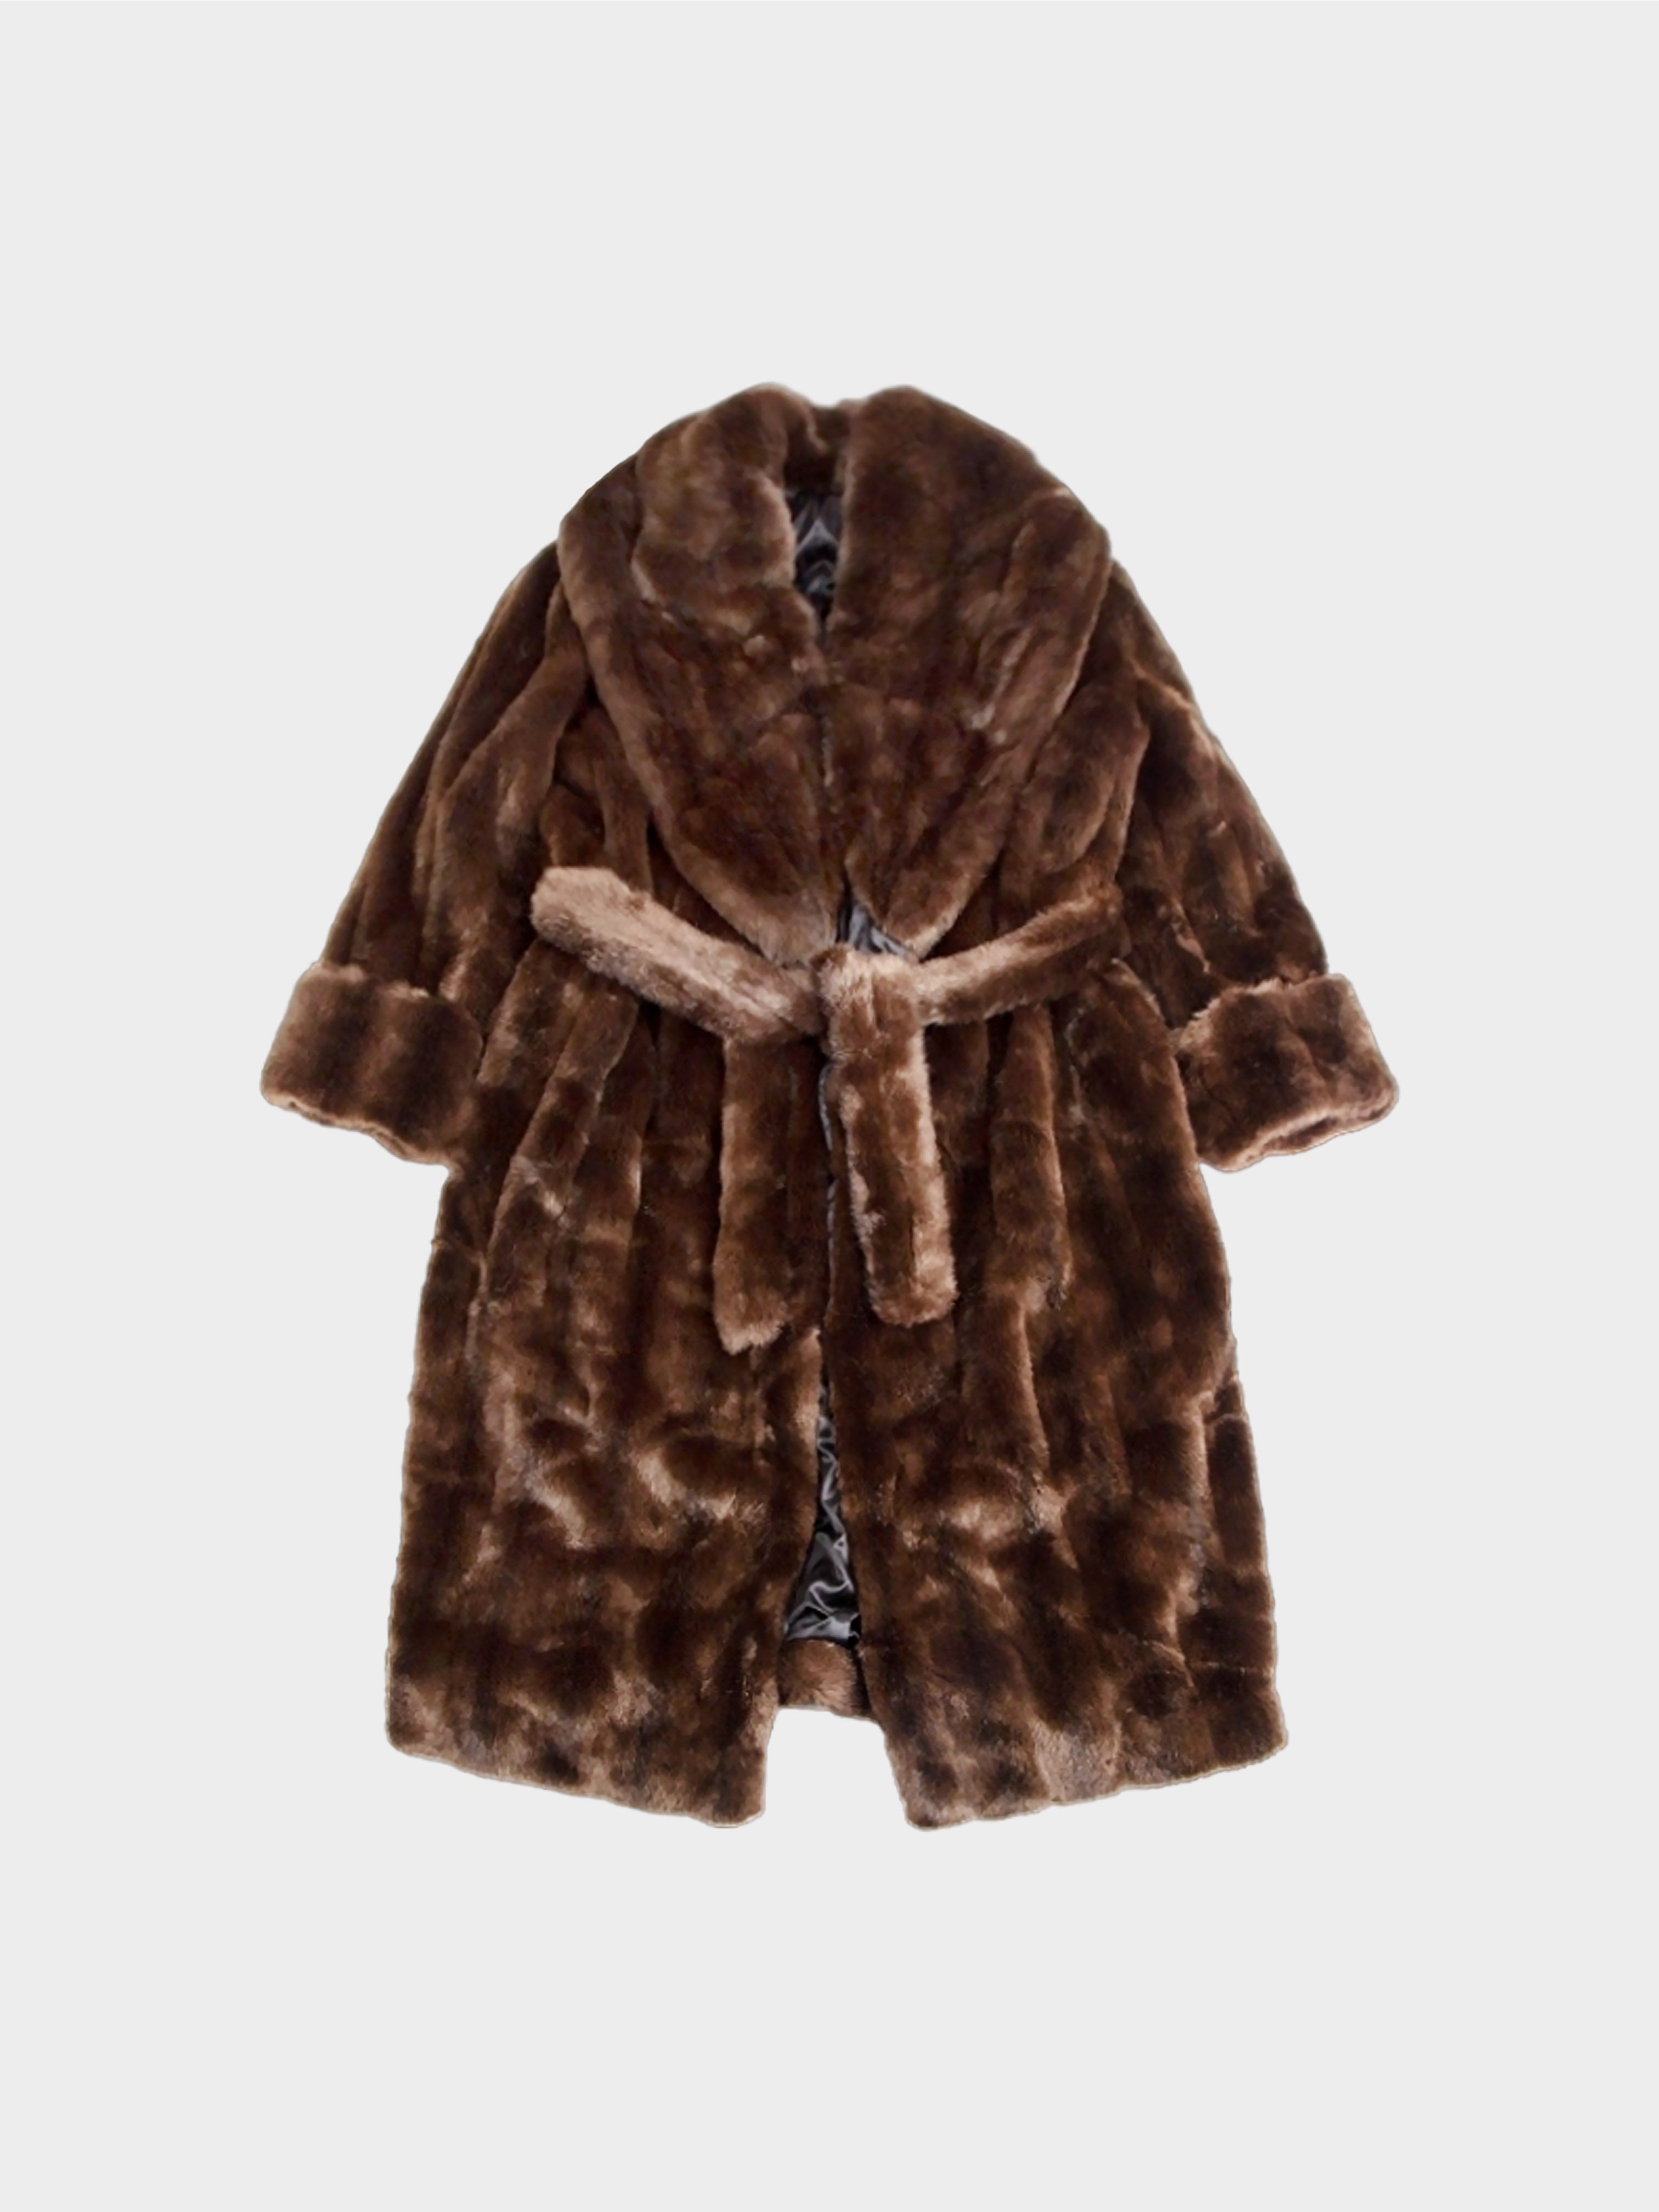 Jean Paul Gaultier 2000s Brown Fur Coat